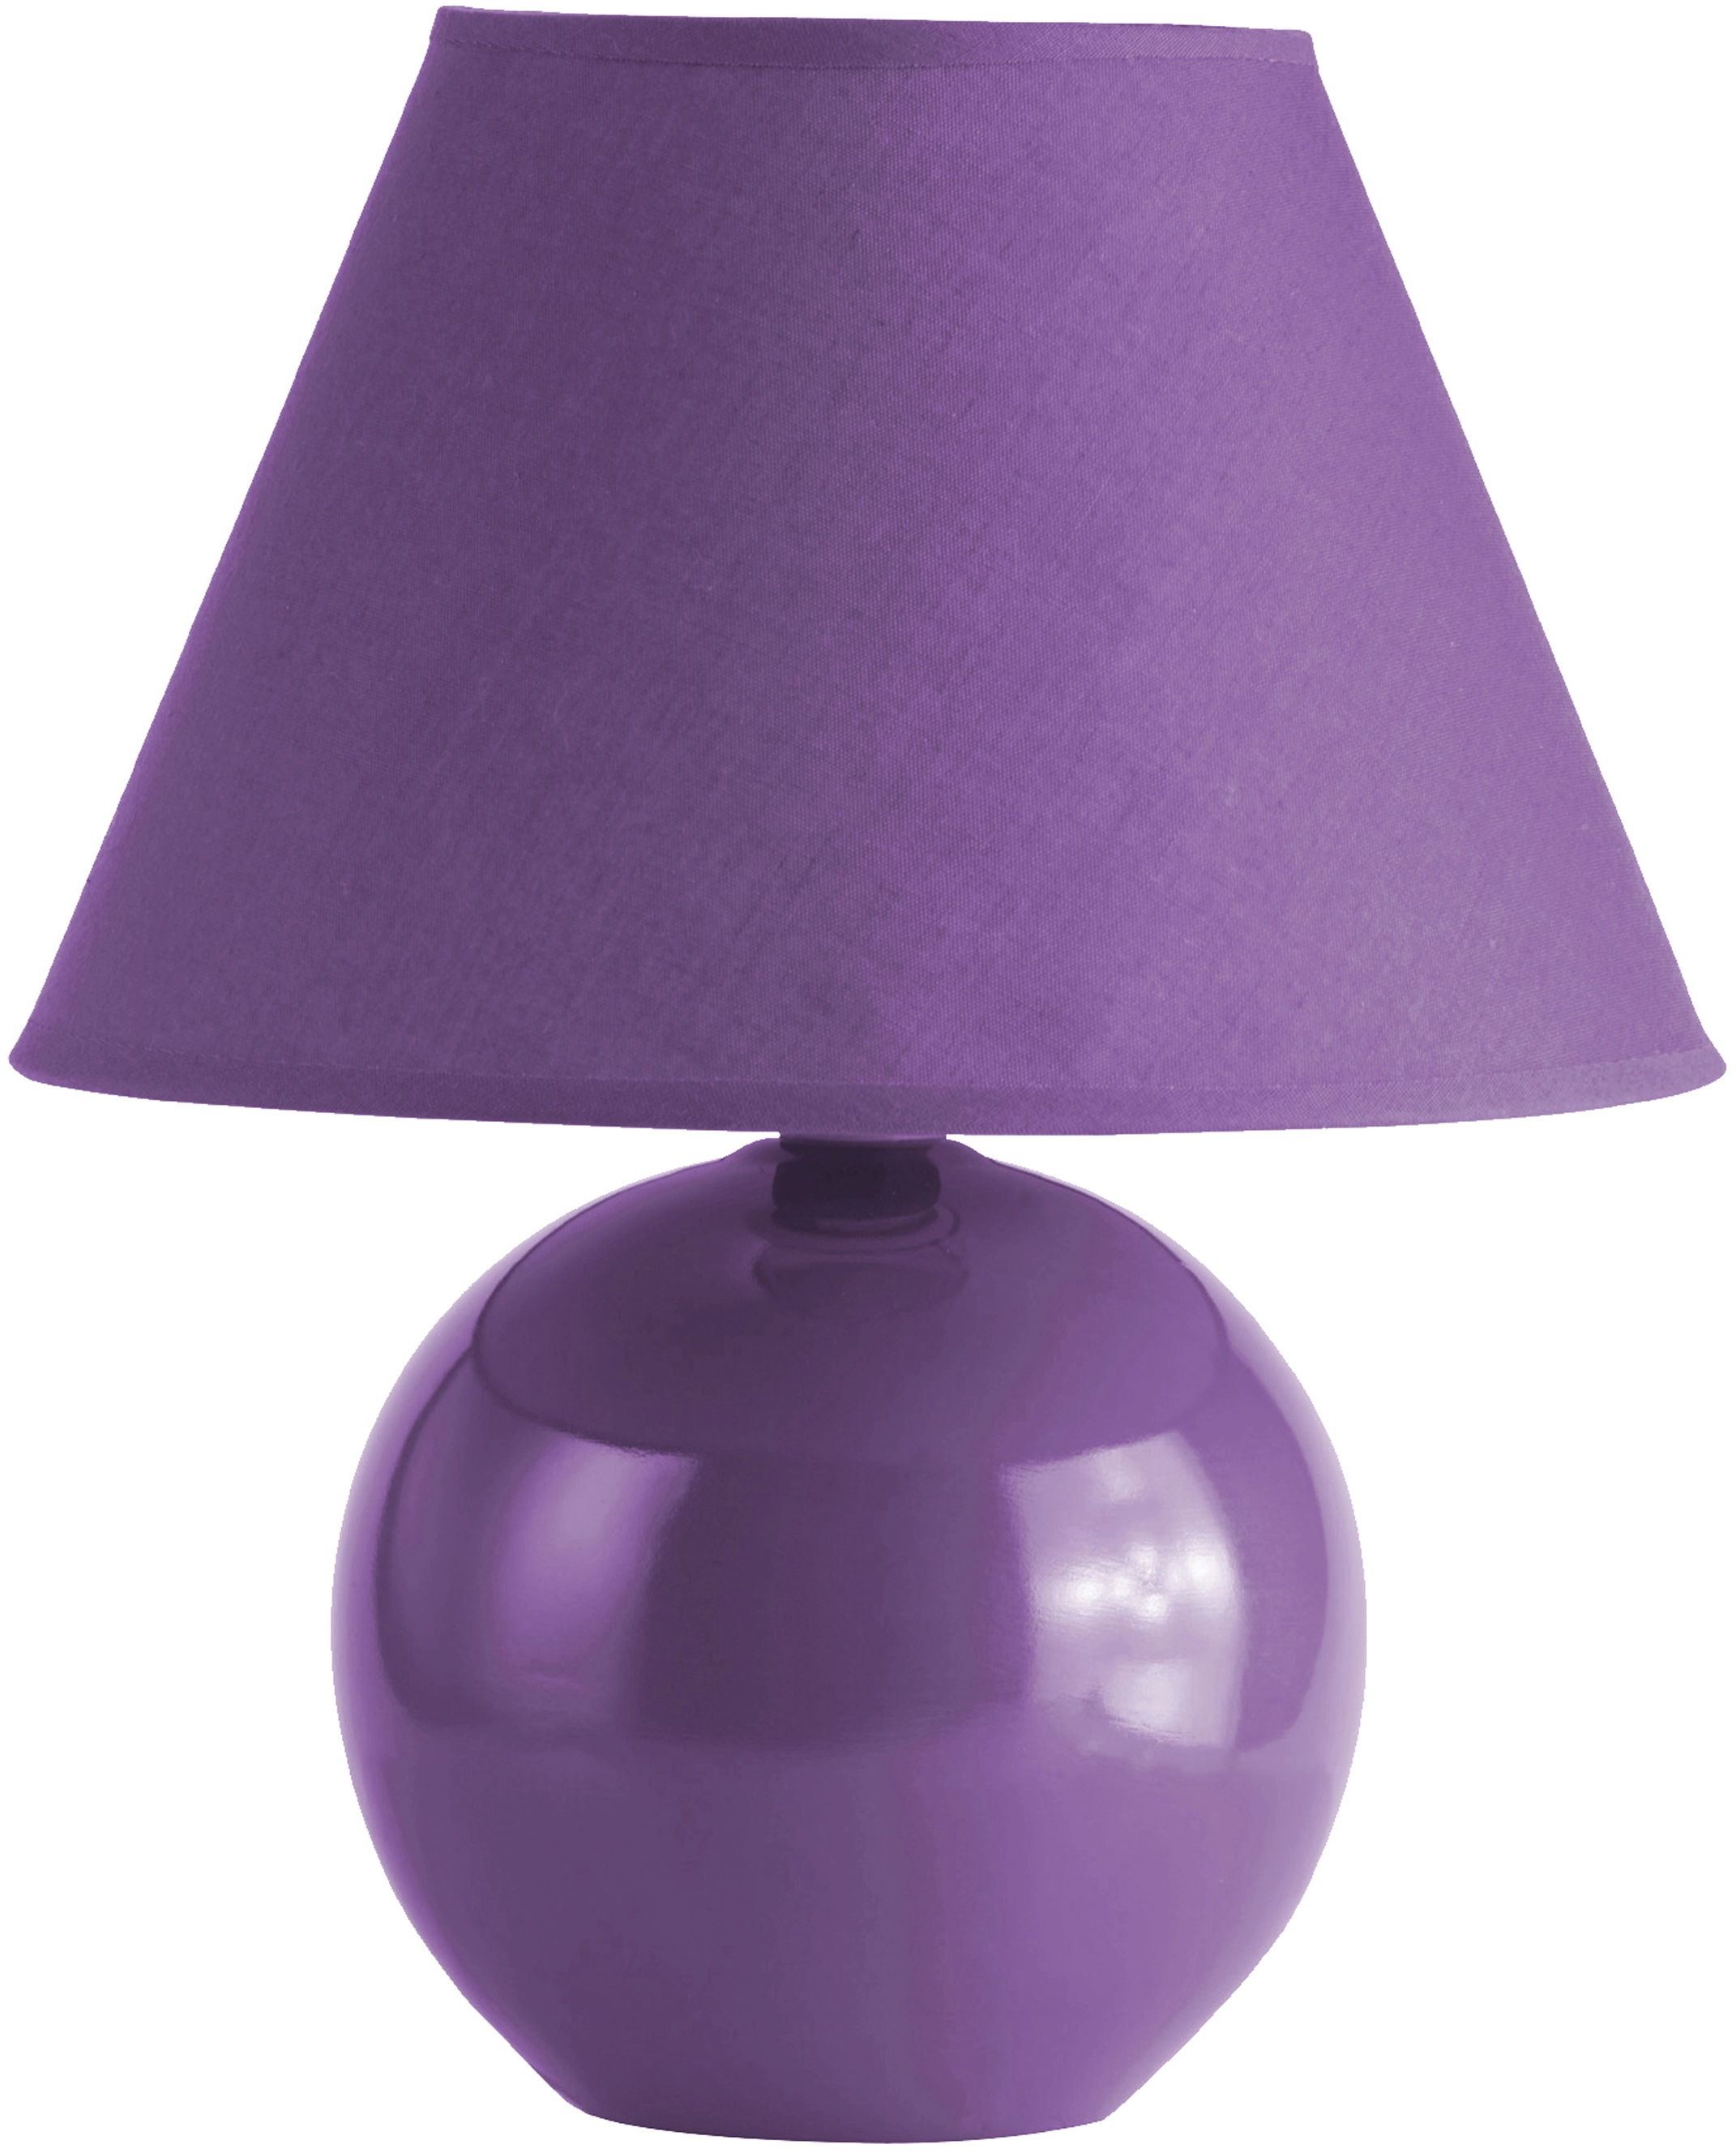 Tischleuchte Keramik Violett